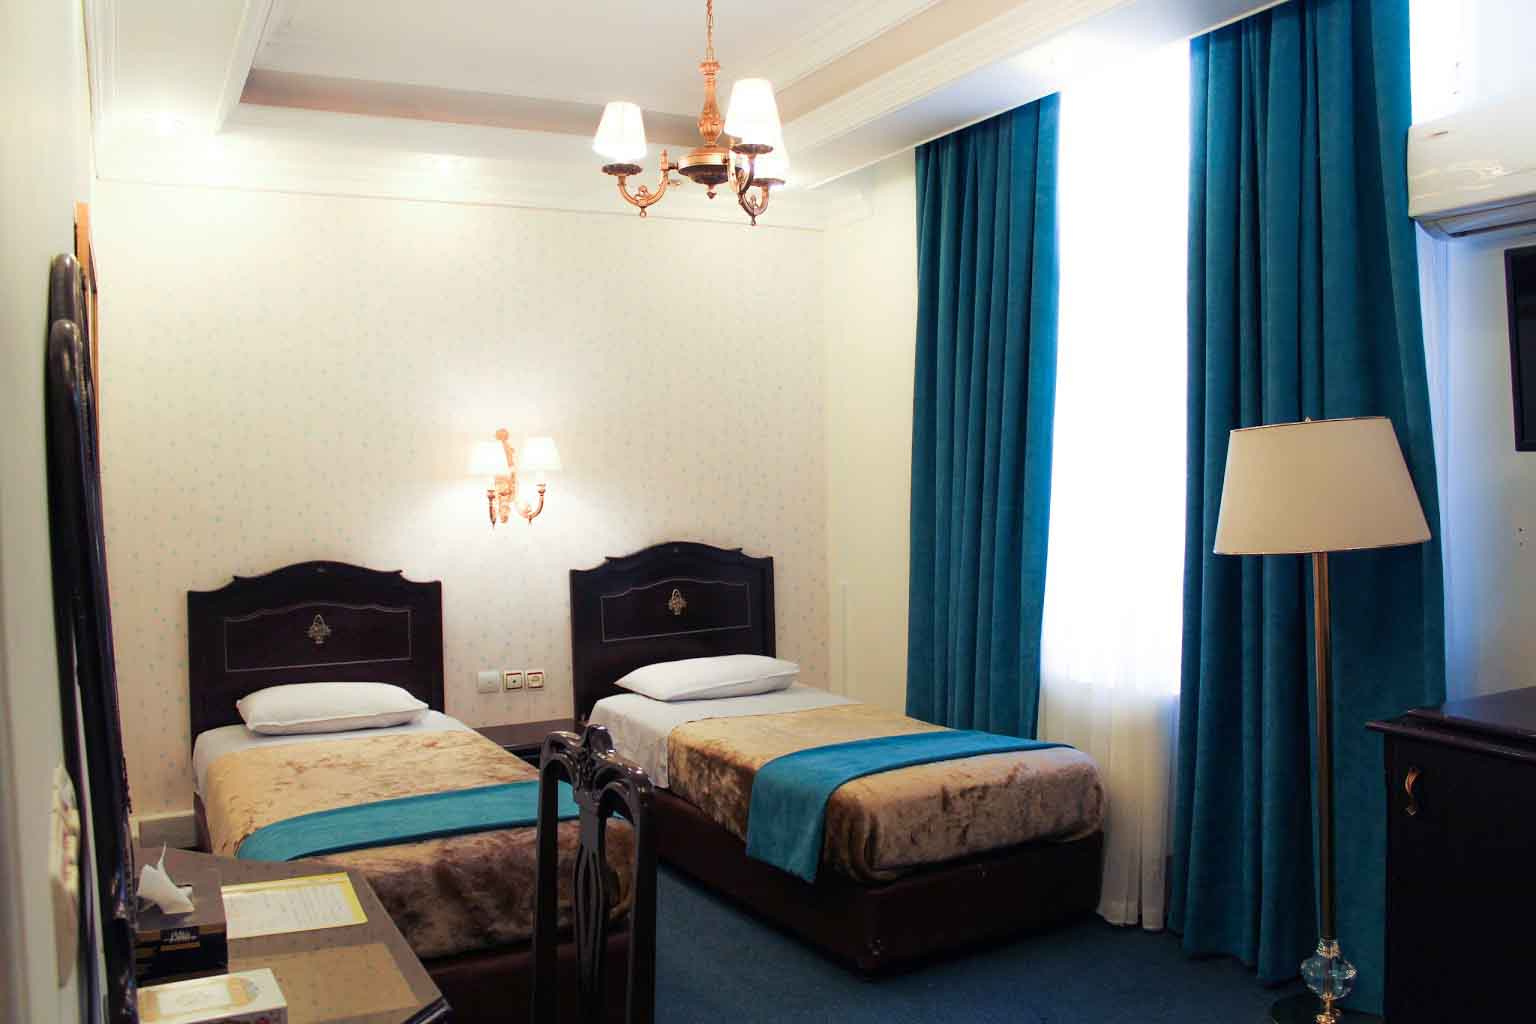 Three Beds Room, Tehran Parsa Hotel ,Tehran hotels, iran hotels , 3 star hotels in tehran